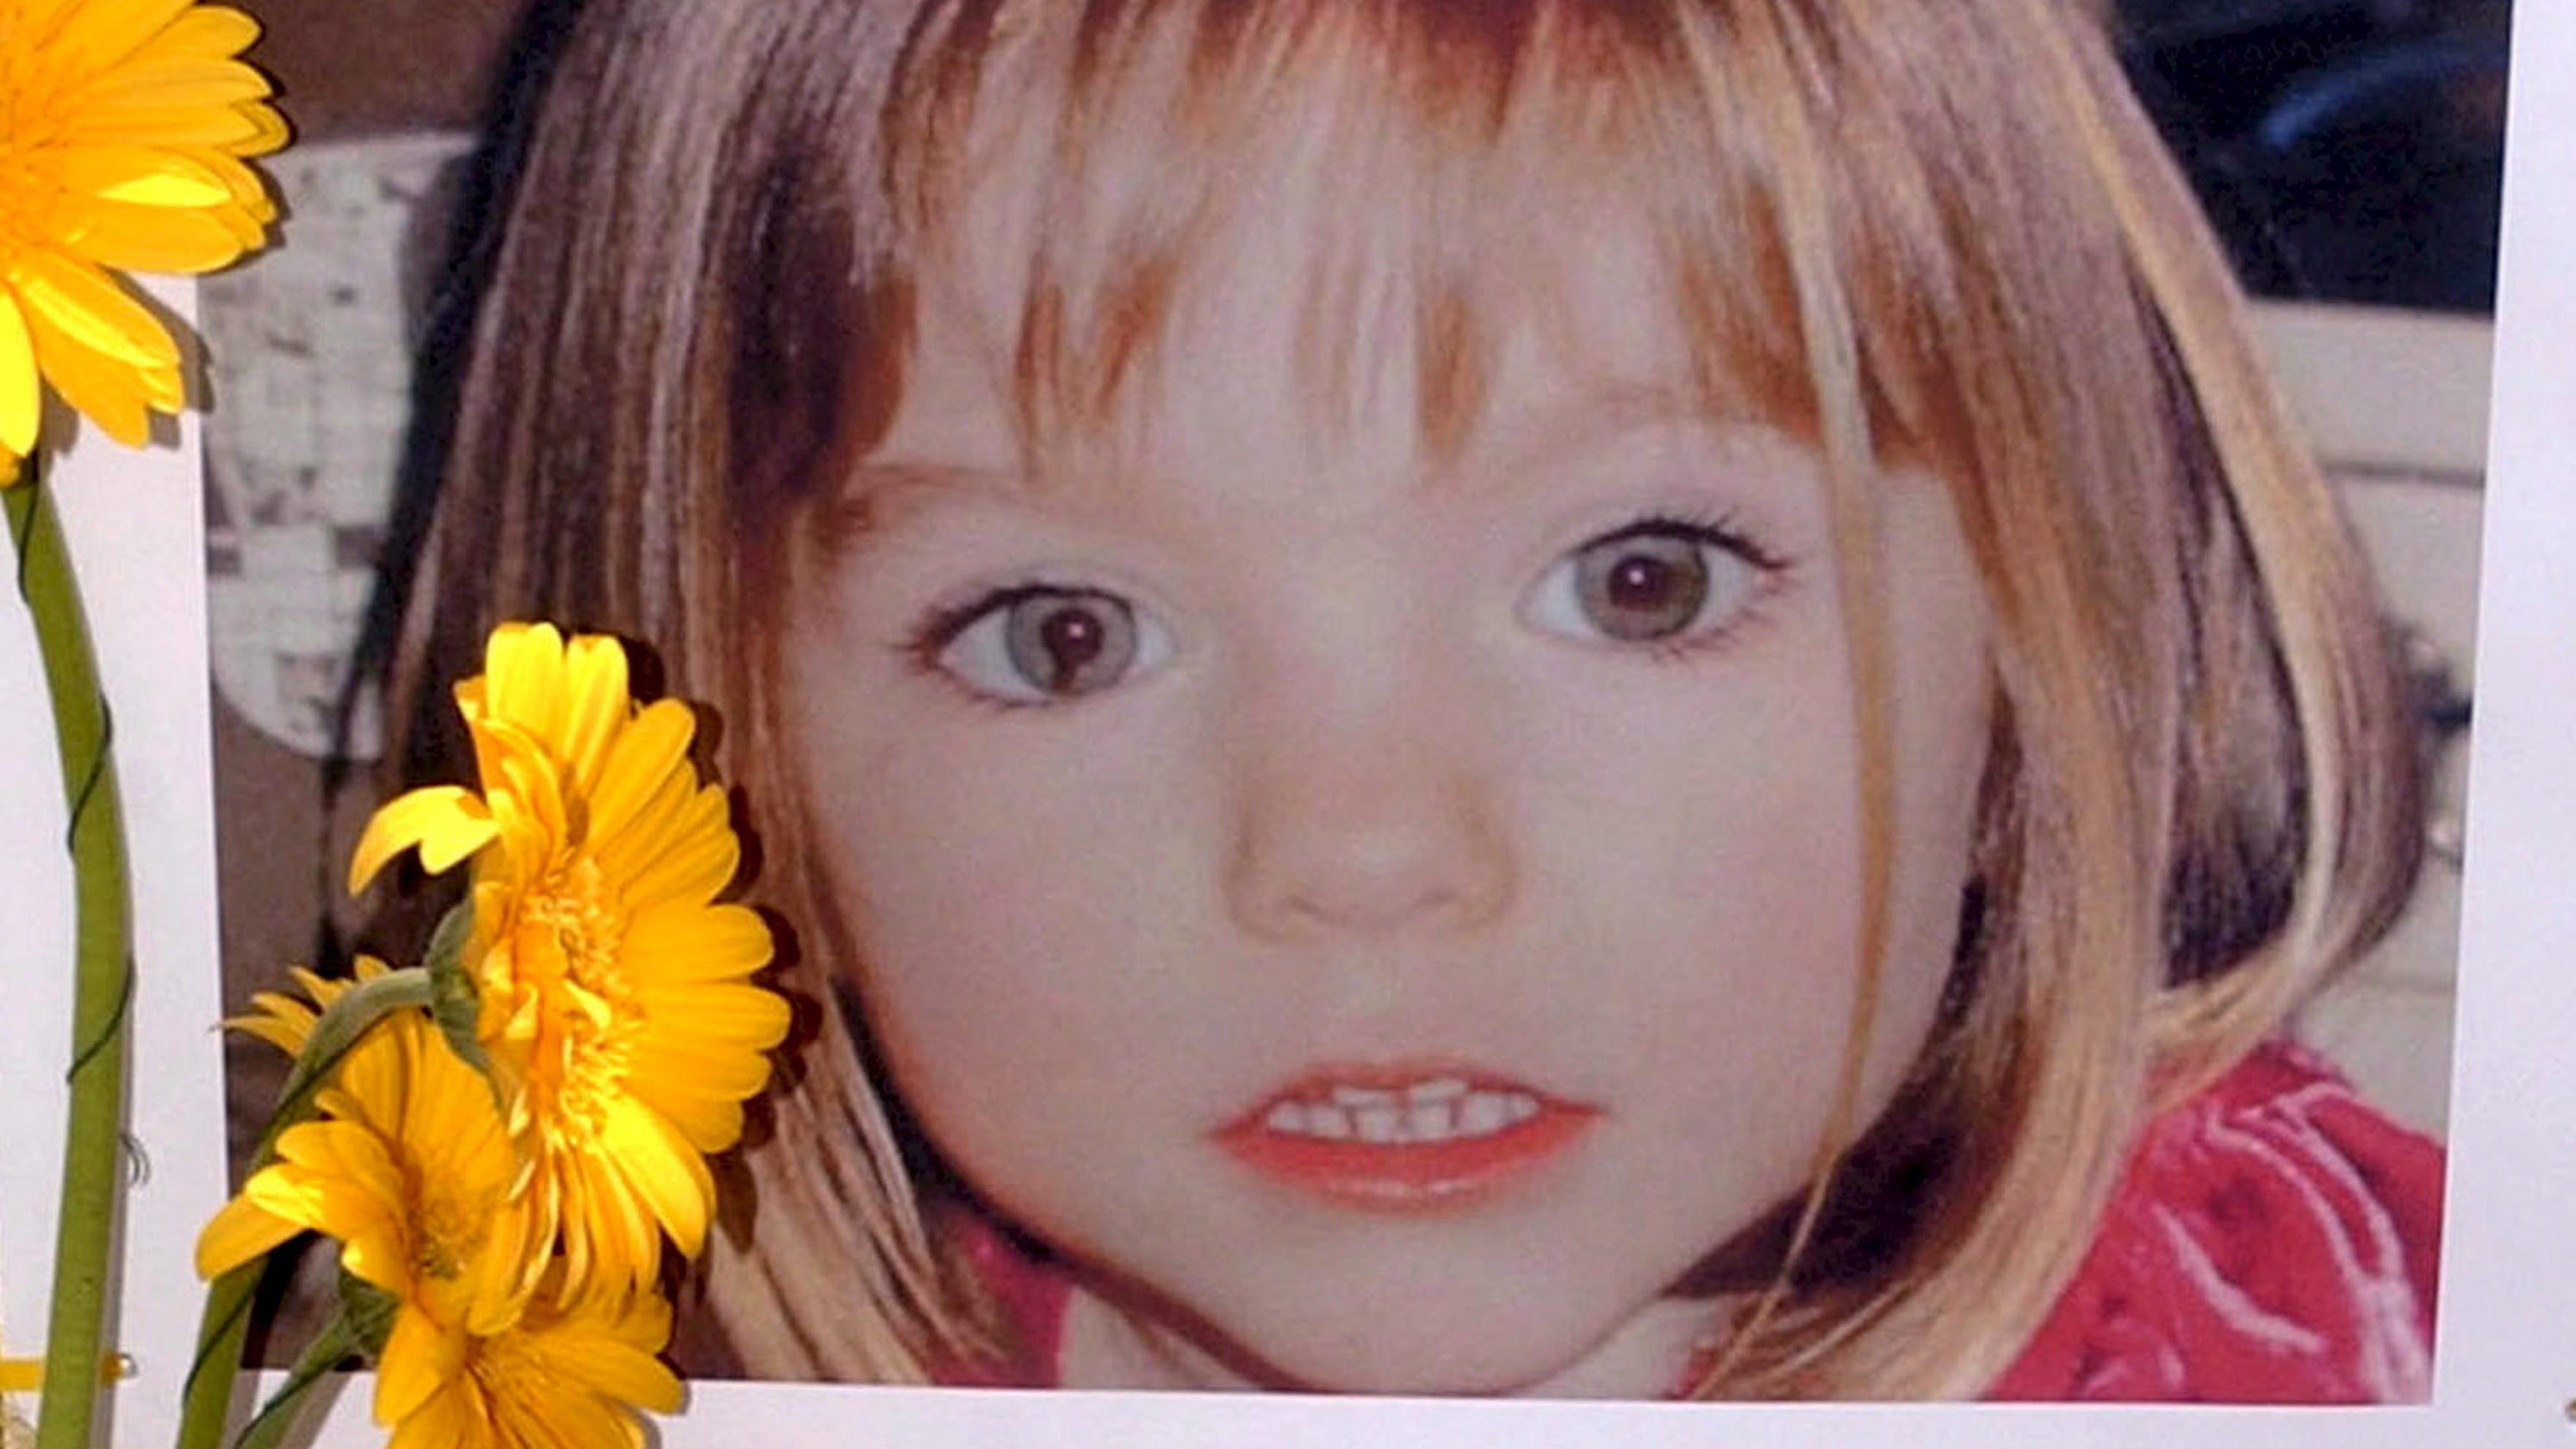 ARCHIV - 12.05.2007, Portugal, Lagos: Blumen stehen vor einem Bild, das die verschwundenen Madeleine McCann (Maddie) auf einem Foto zeigt, das ihre Eltern im Zusammenhang mit dem Verschwinden des Kindes veröffentlich haben. (zu dpa: "Fall Maddie: Erm